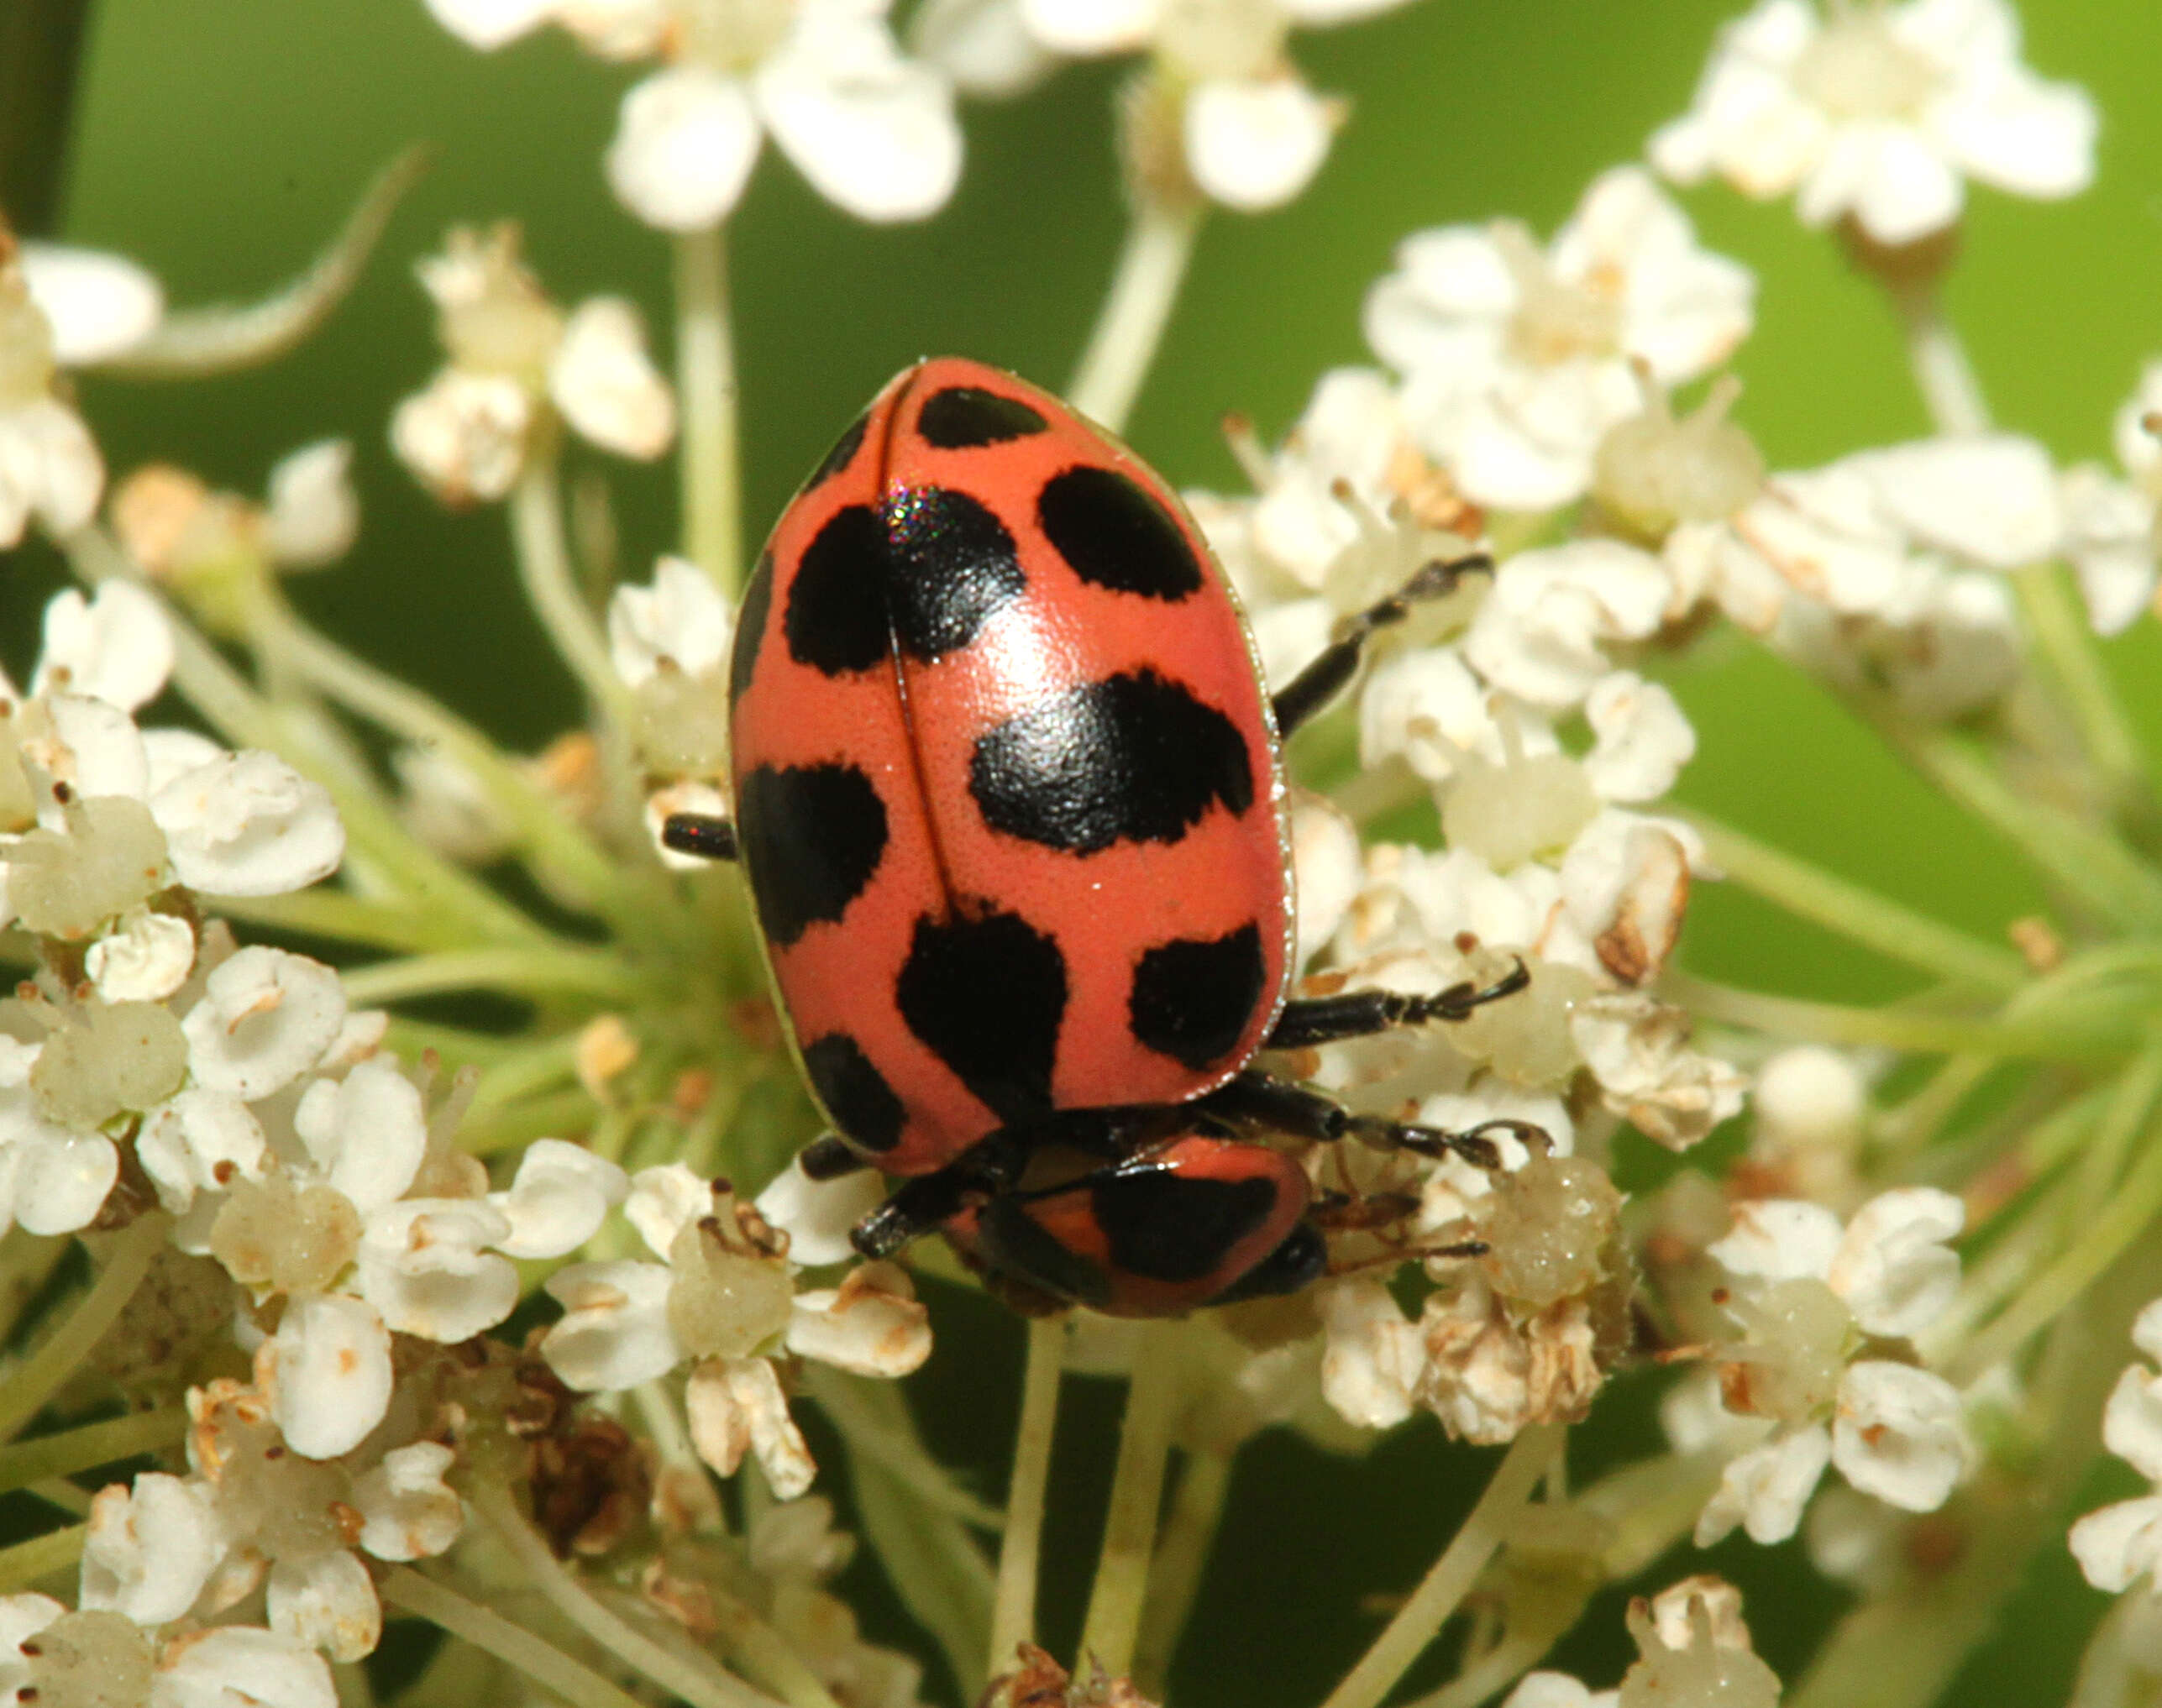 Image of Red Milkweed Beetle